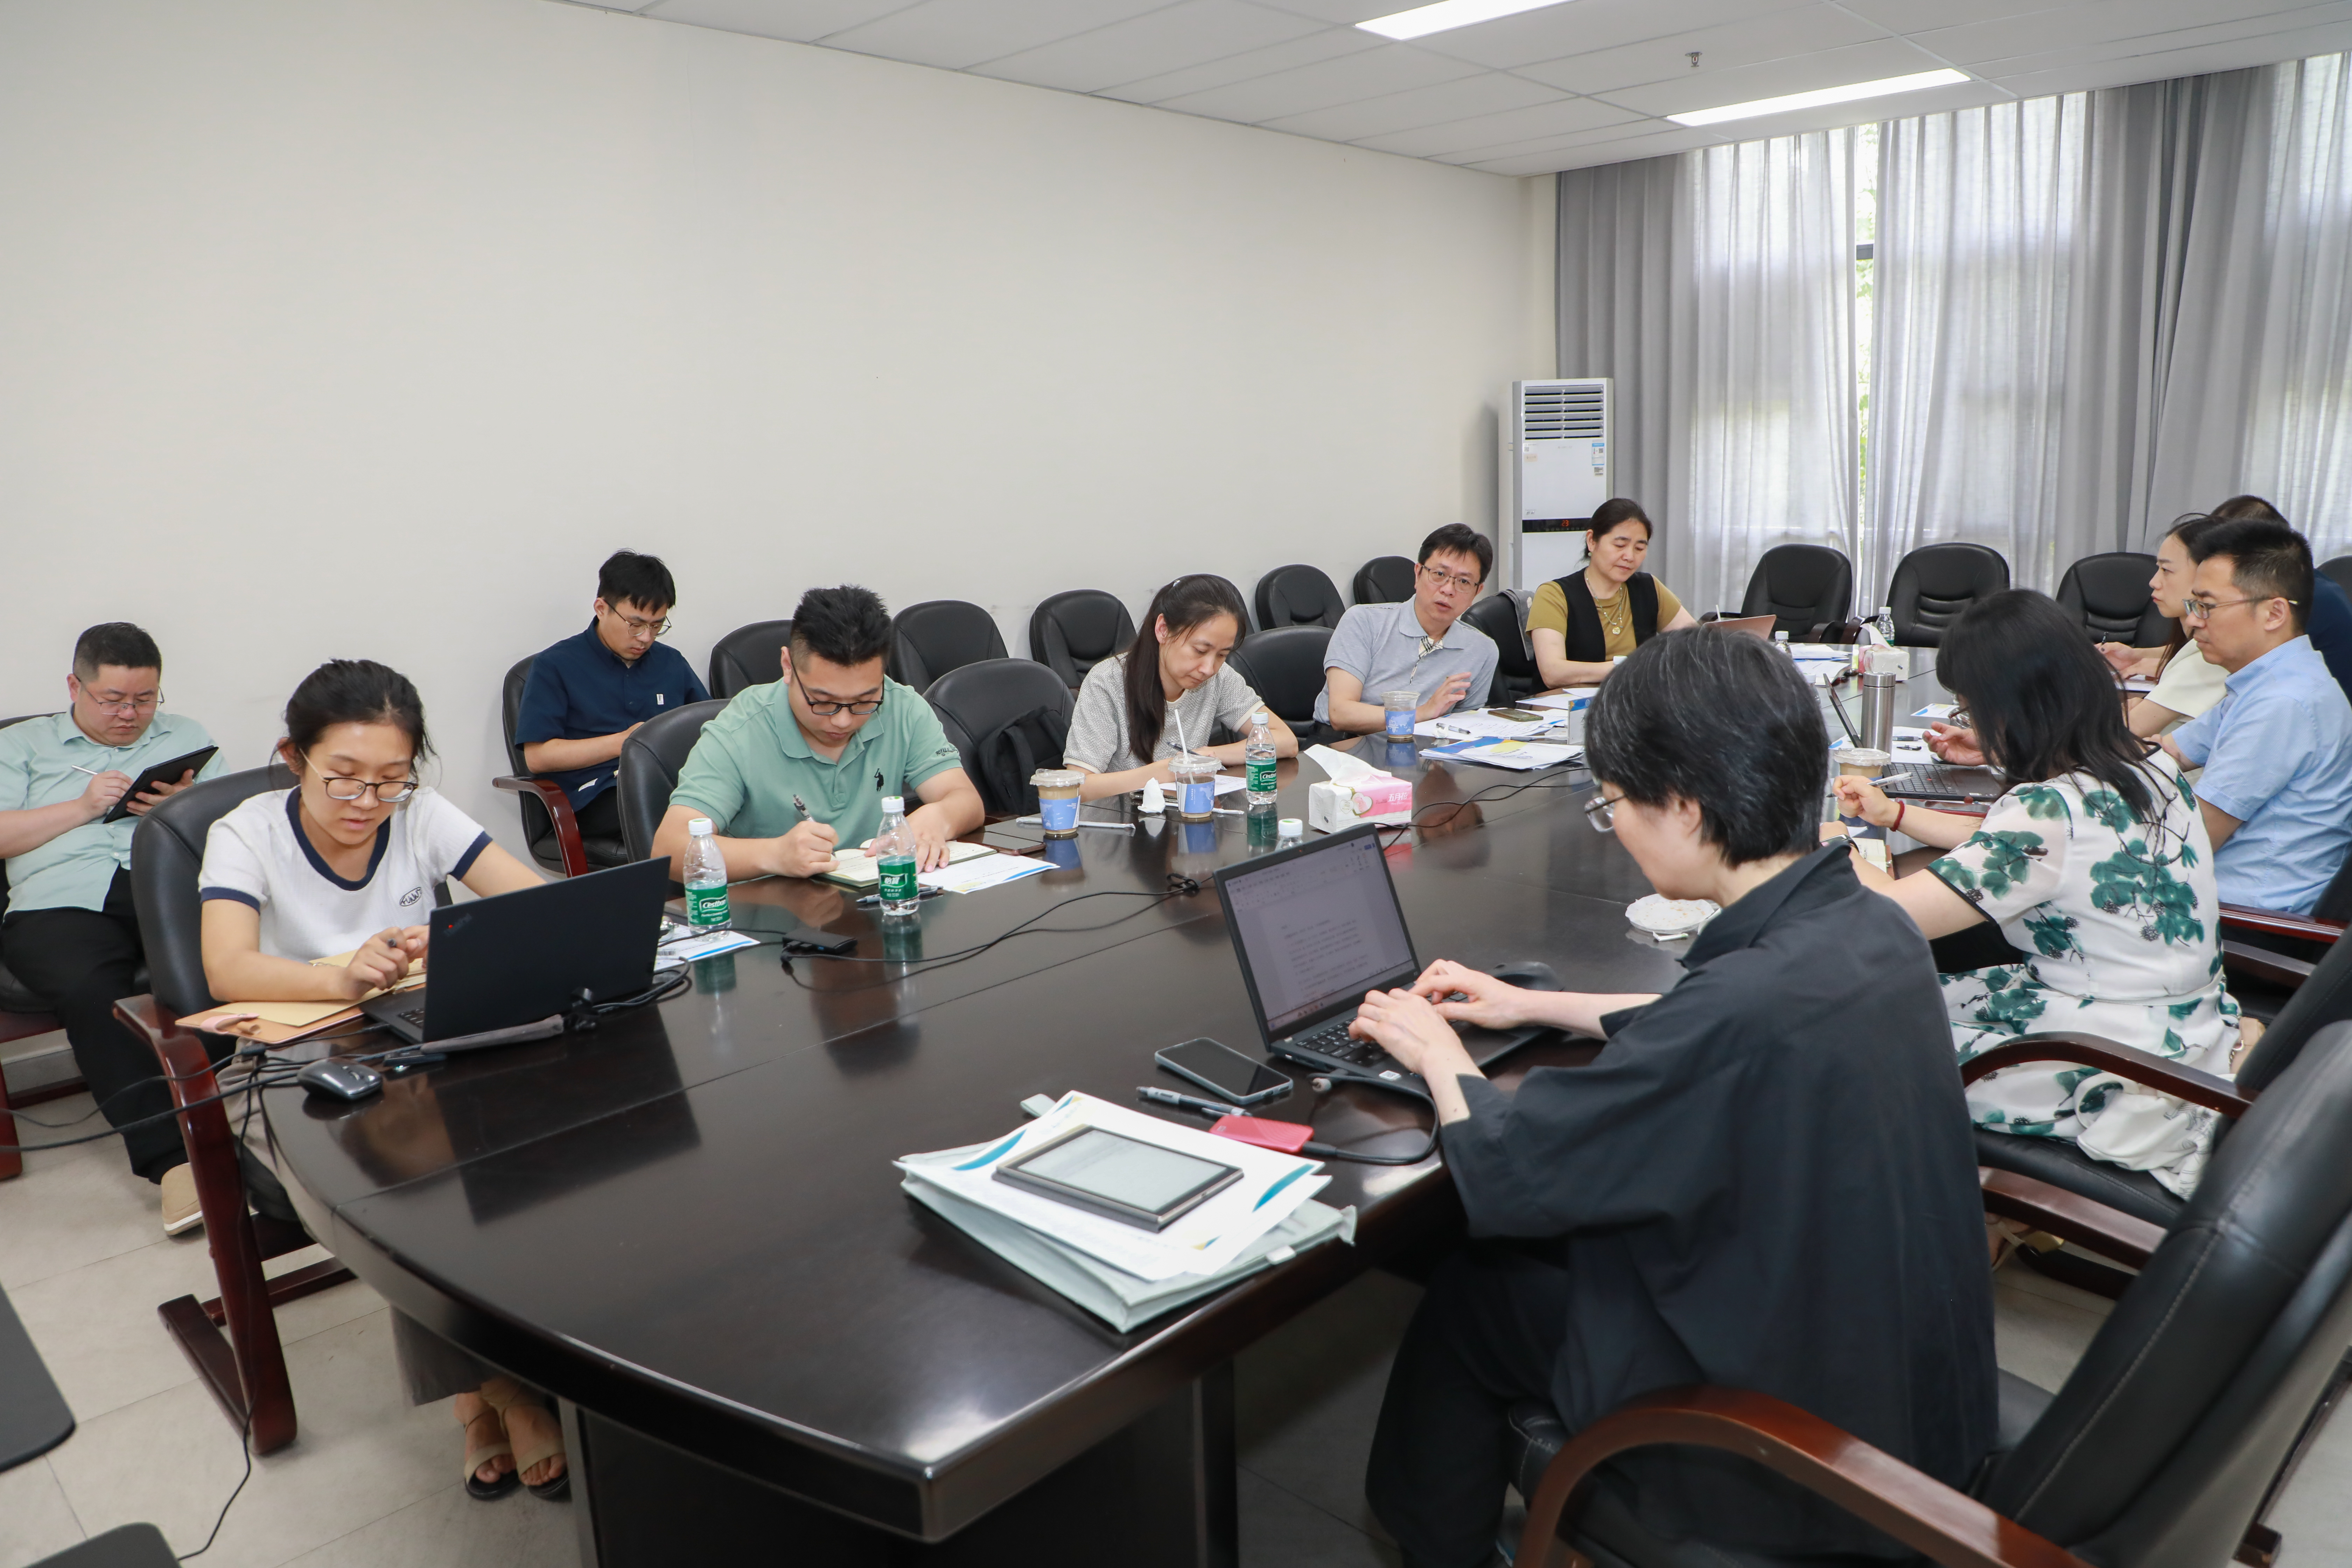 上海外国语大学召开审核评估专班工作推进会及院系评建工作推进会